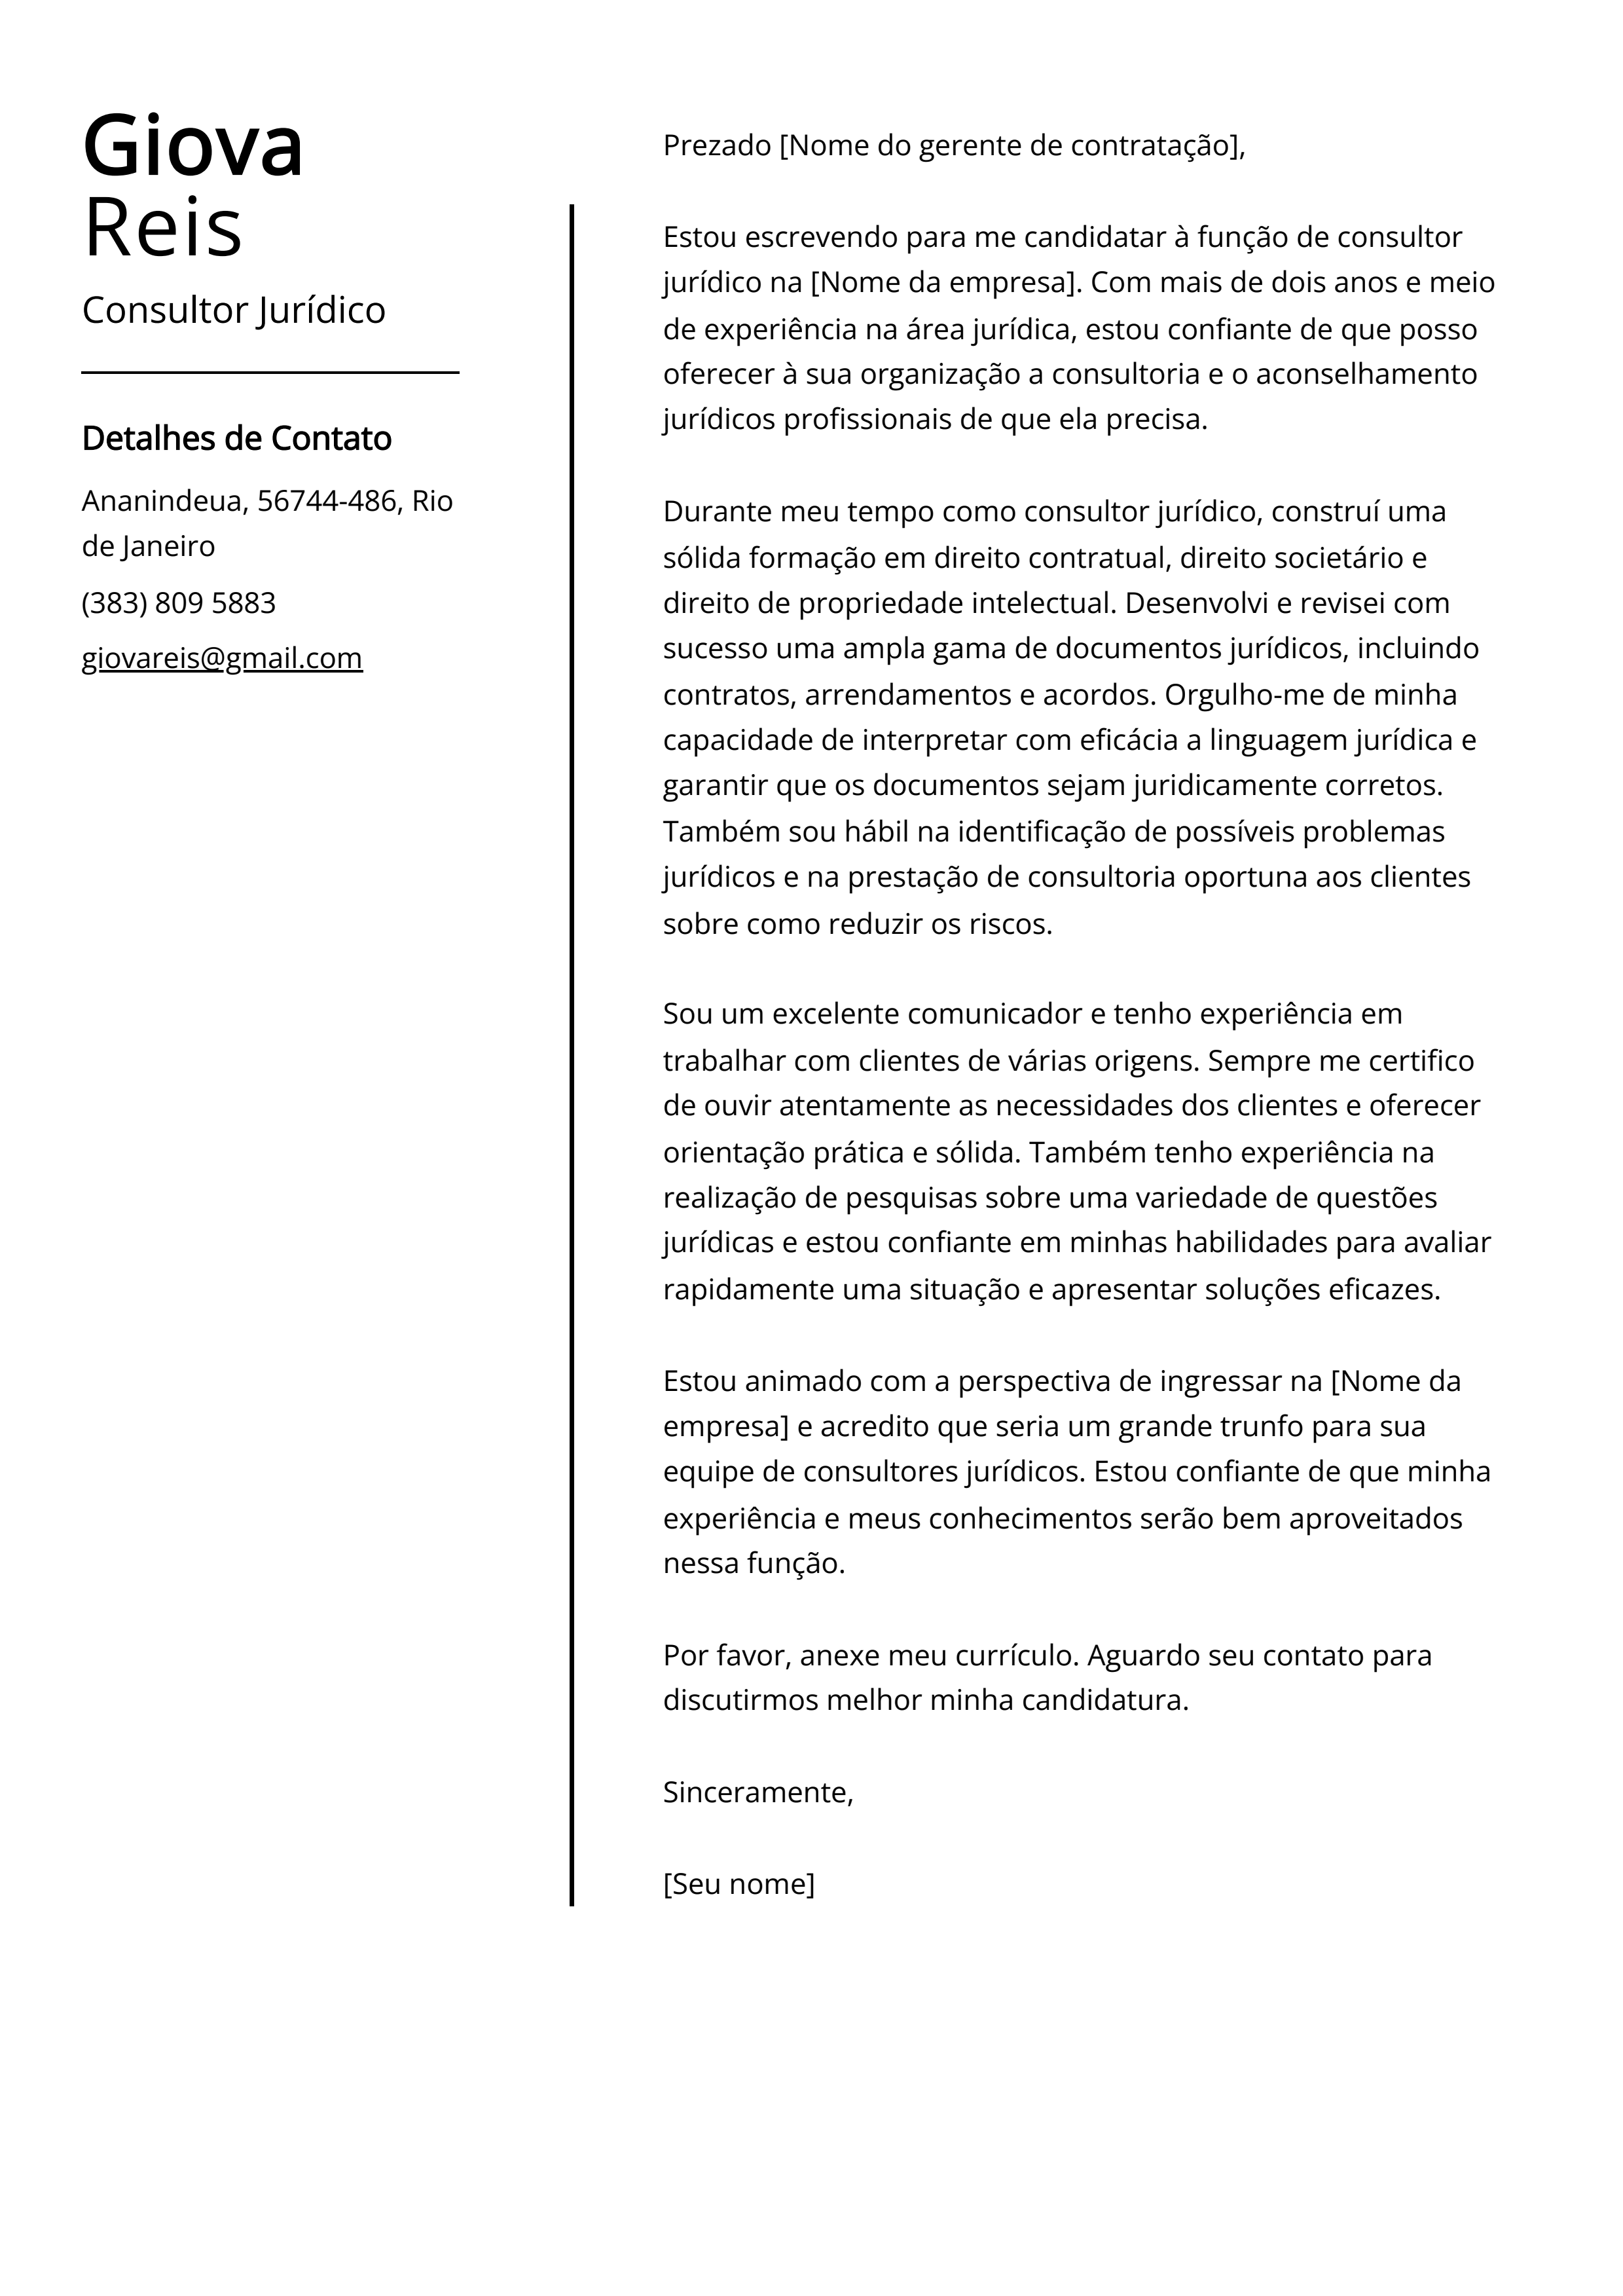 Exemplo de carta de apresentação do Consultor Jurídico